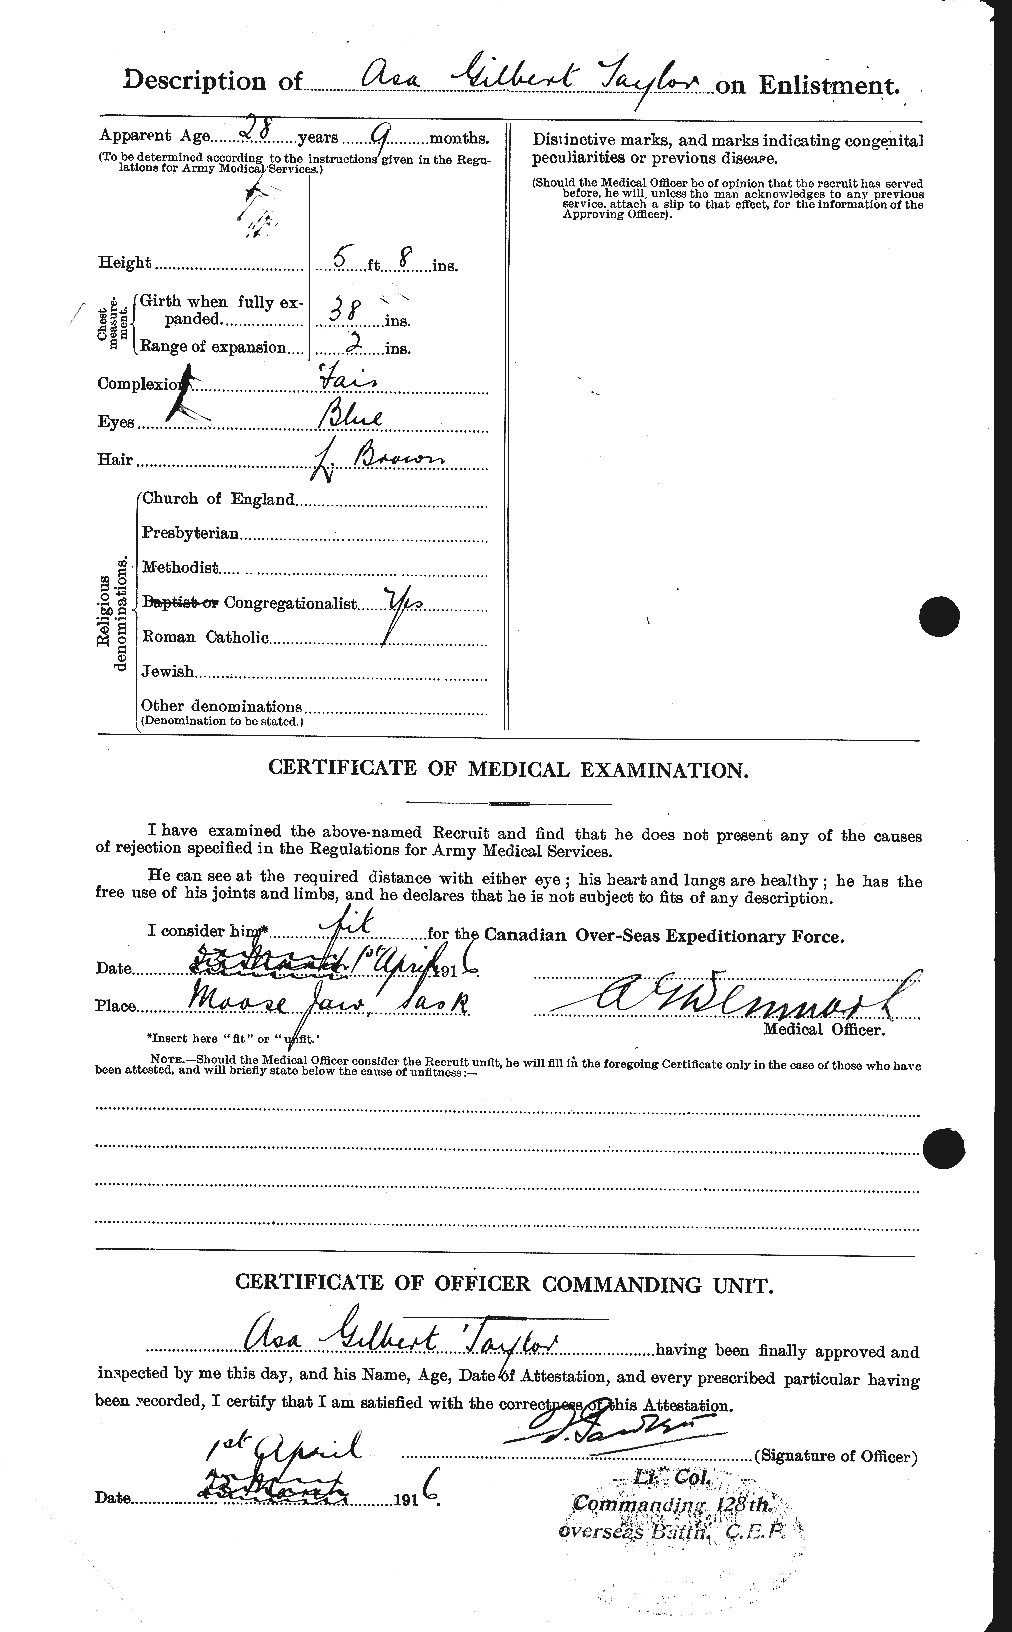 Dossiers du Personnel de la Première Guerre mondiale - CEC 626752b